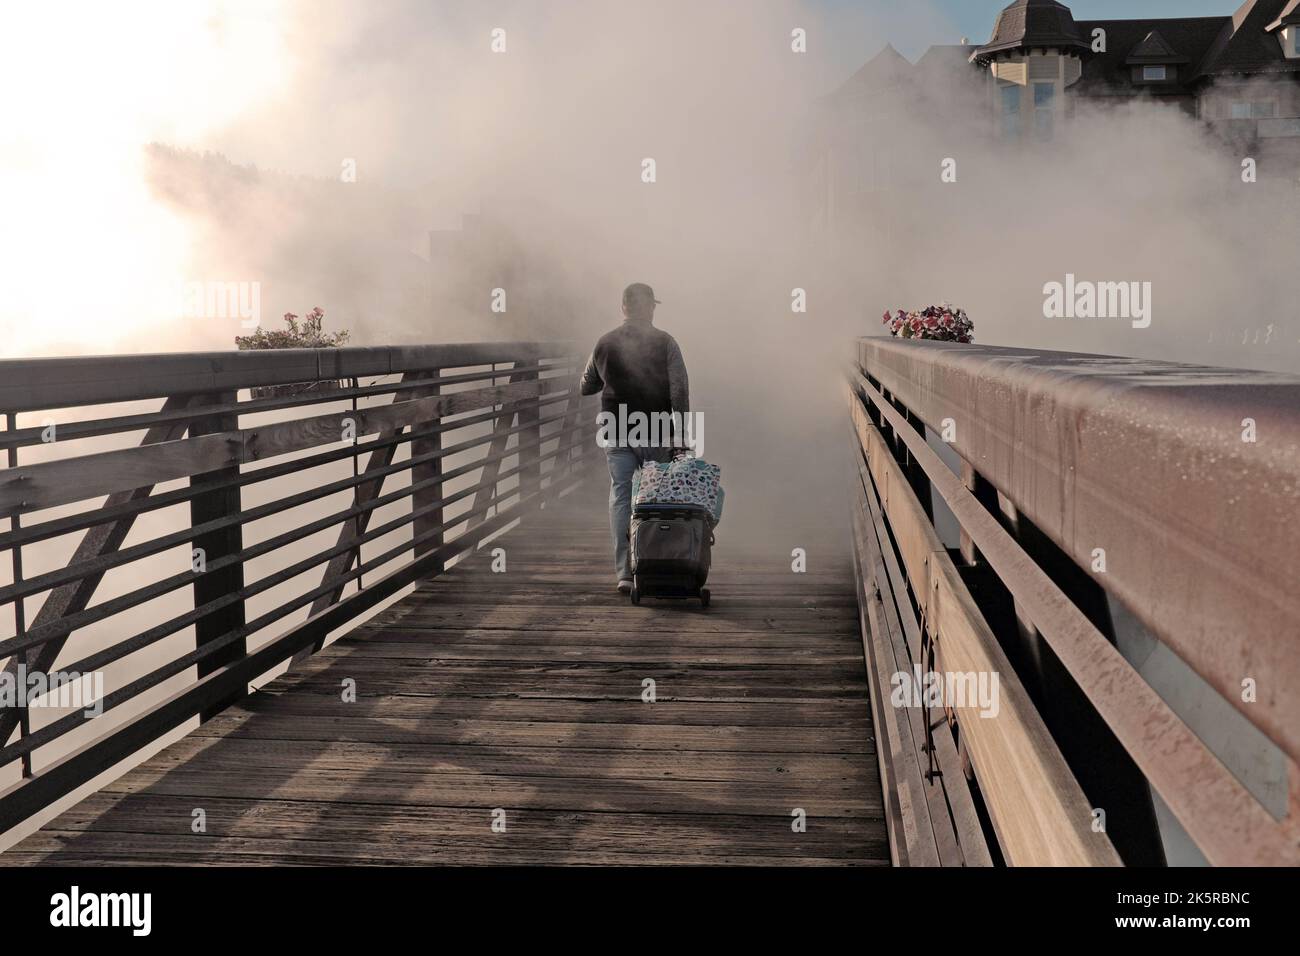 Un hombre camina con equipaje a través de un puente peatonal mientras los gases de las fuentes termales geotérmicas naturales envuelven el paisaje en Pagosa Springs, Colorado, EE.UU. Foto de stock